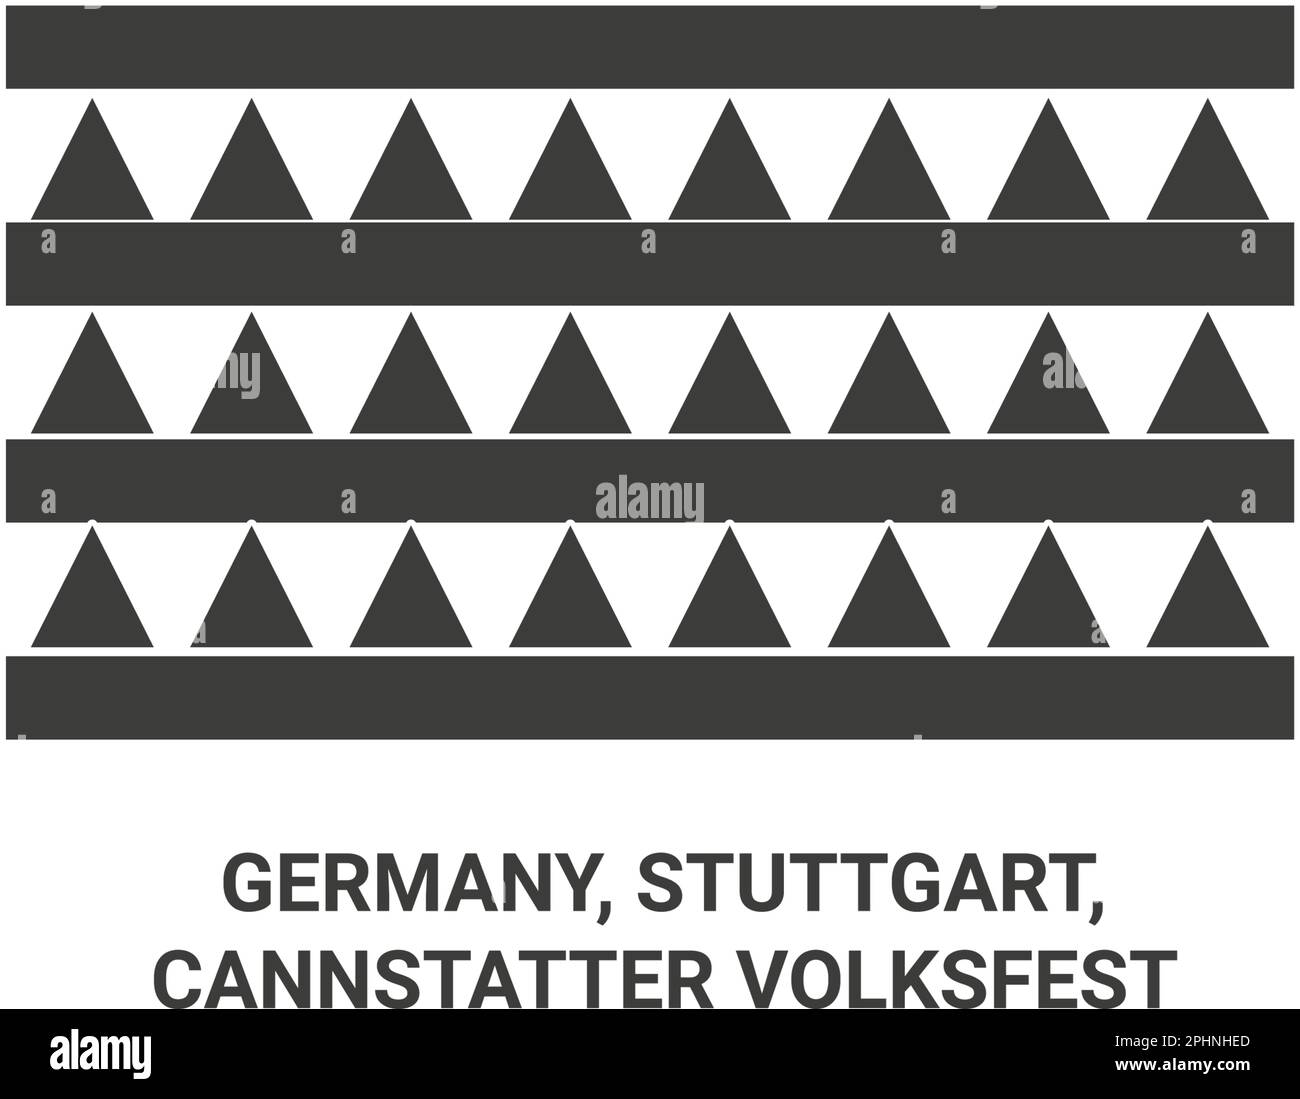 Germany, Stuttgart, Cannstatter Volksfest travel landmark vector illustration Stock Vector